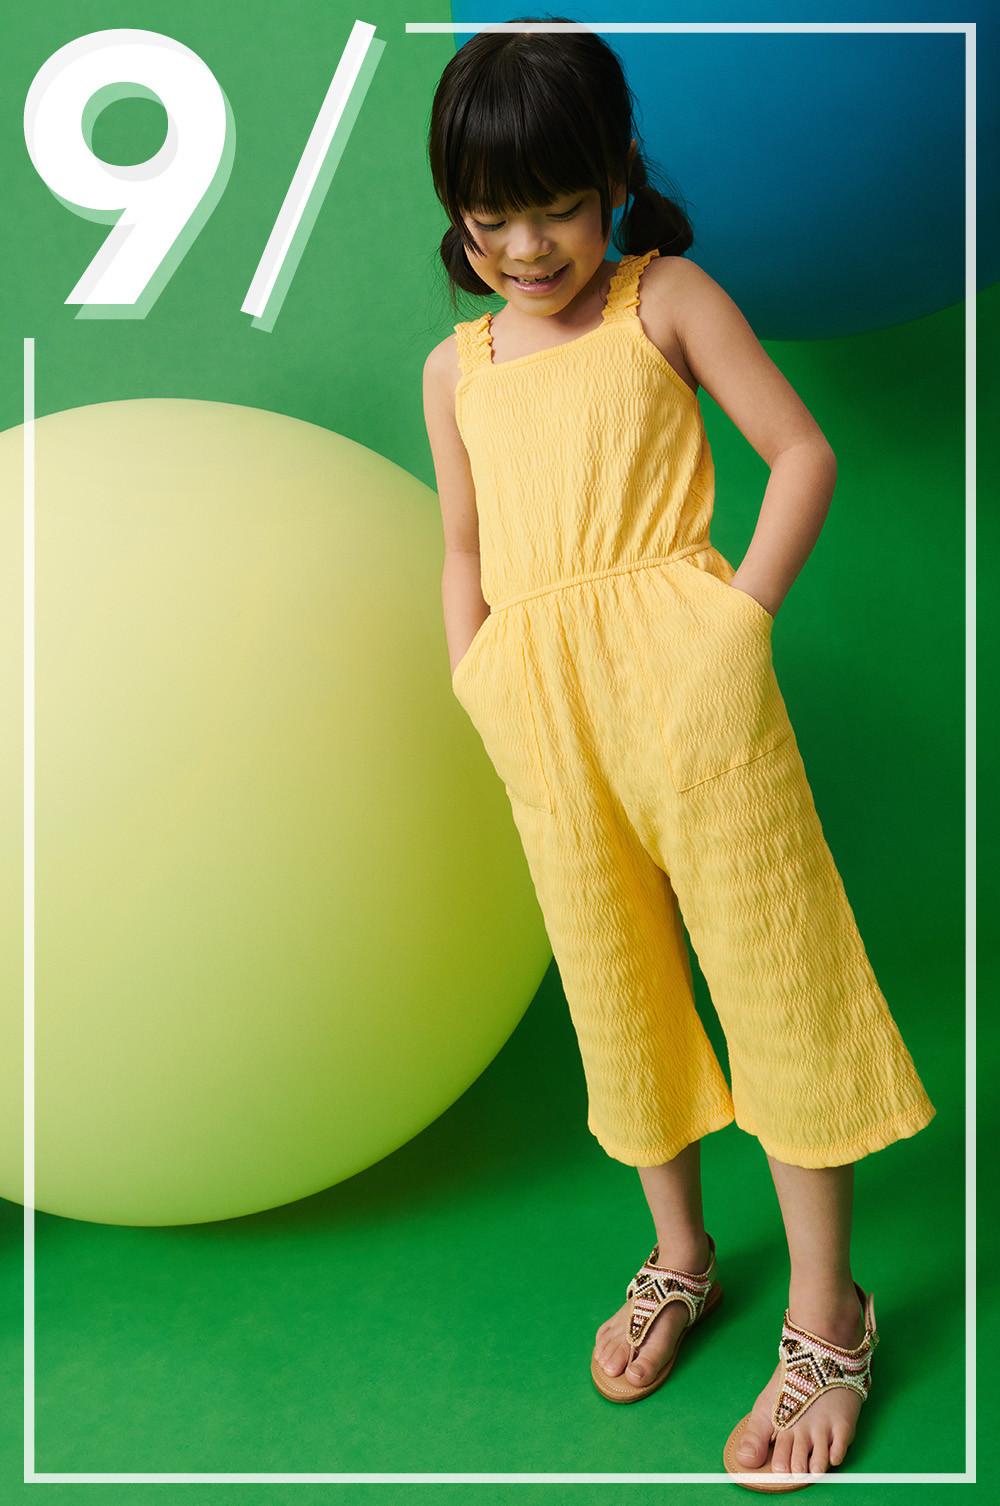 Enfant portant une combinaison jaune